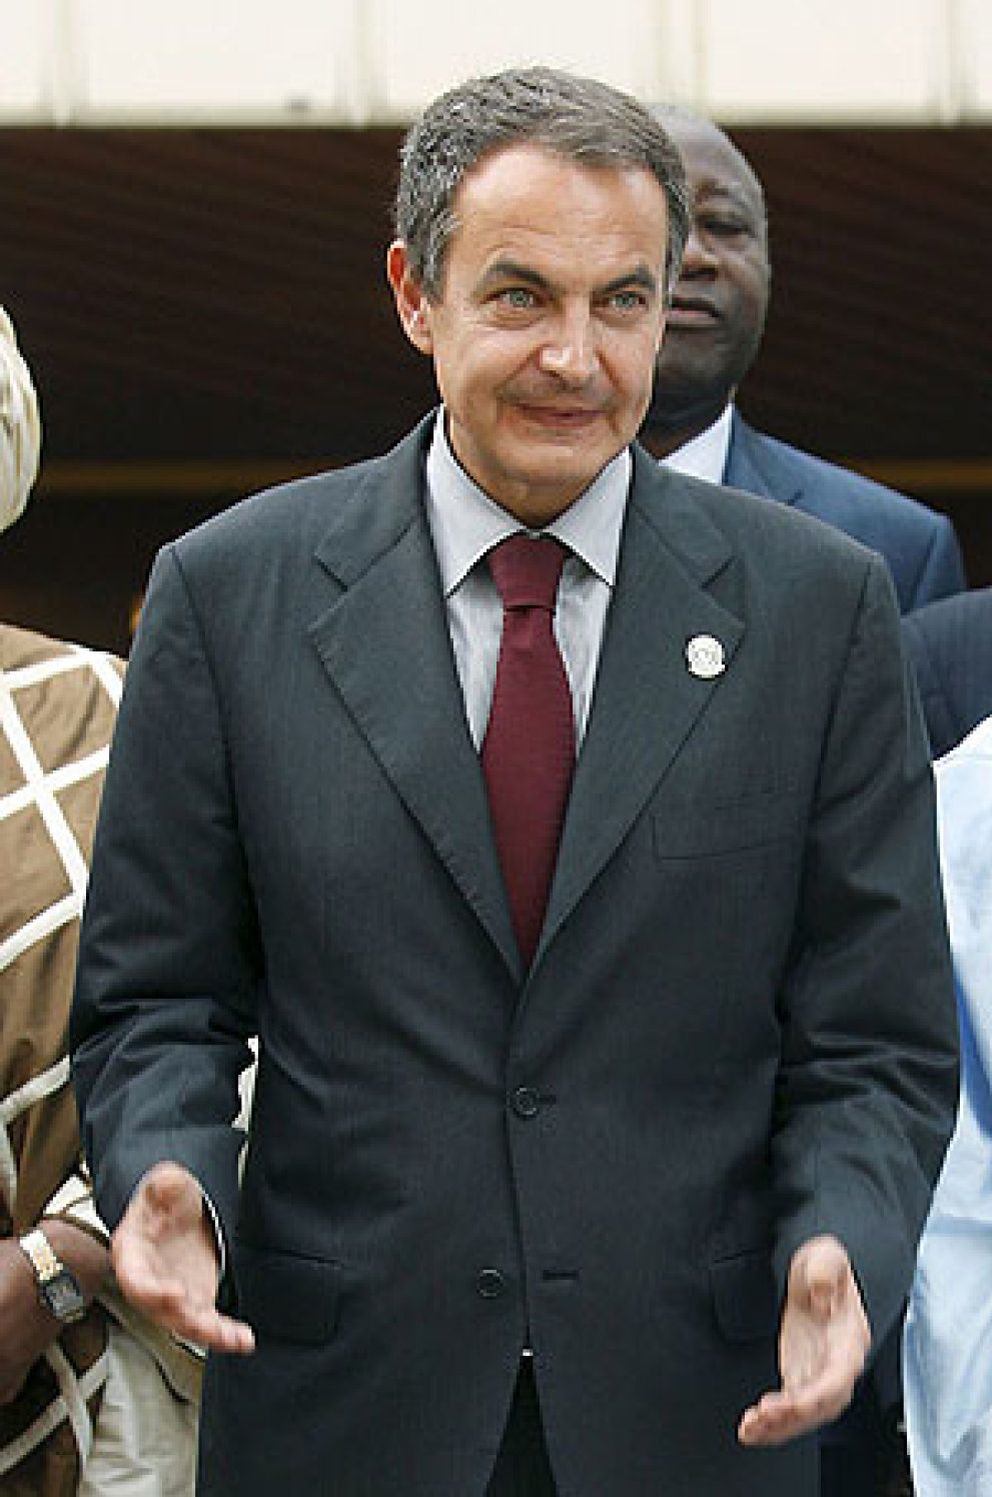 Foto: Zapatero visitará Marruecos antes de fin de año para participar en una cumbre